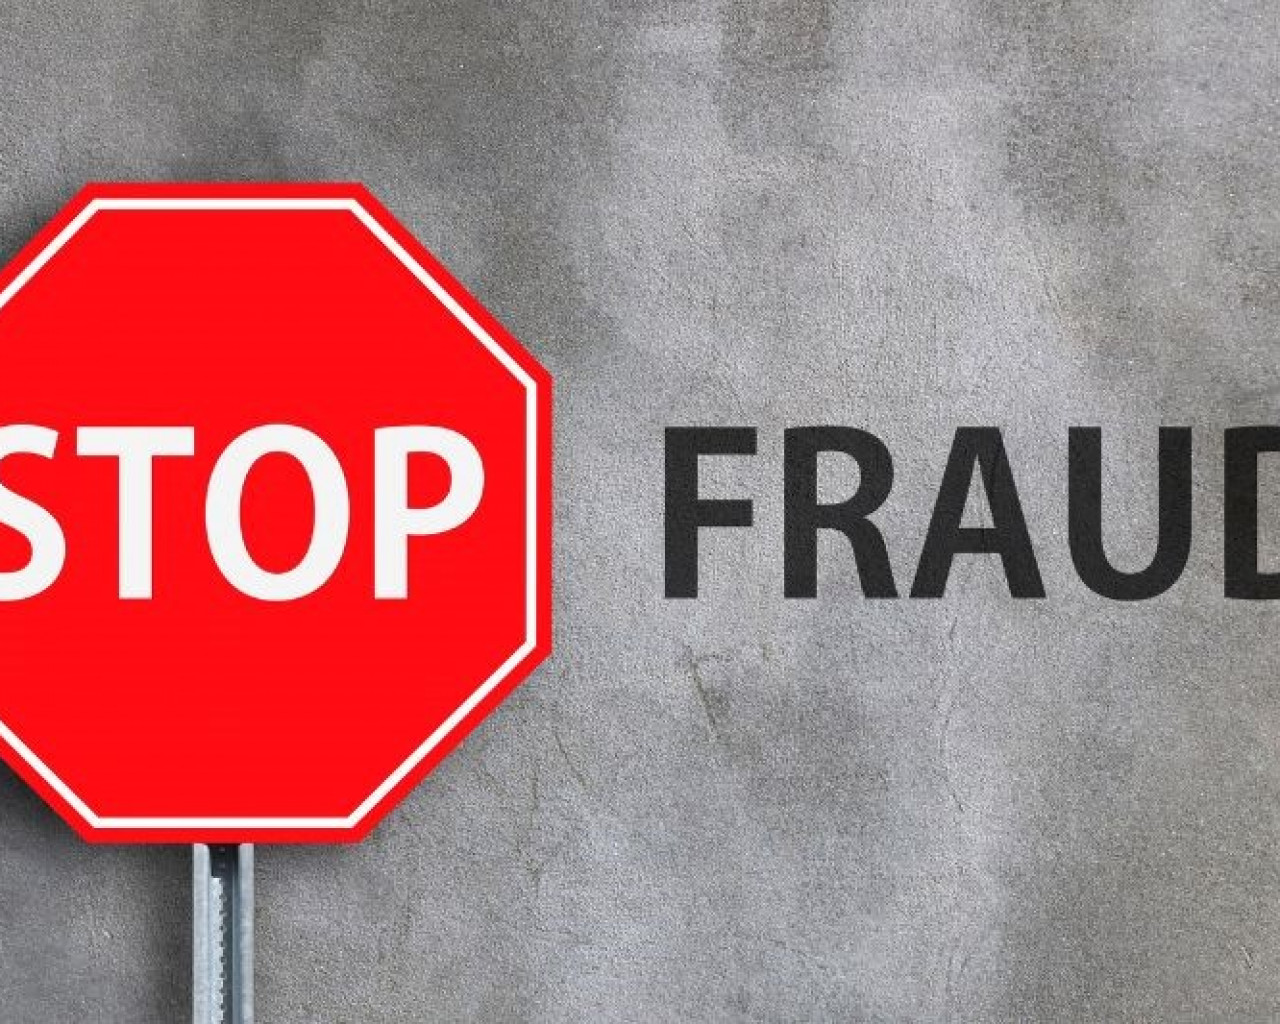 Defensa contra fraudes en apuestas